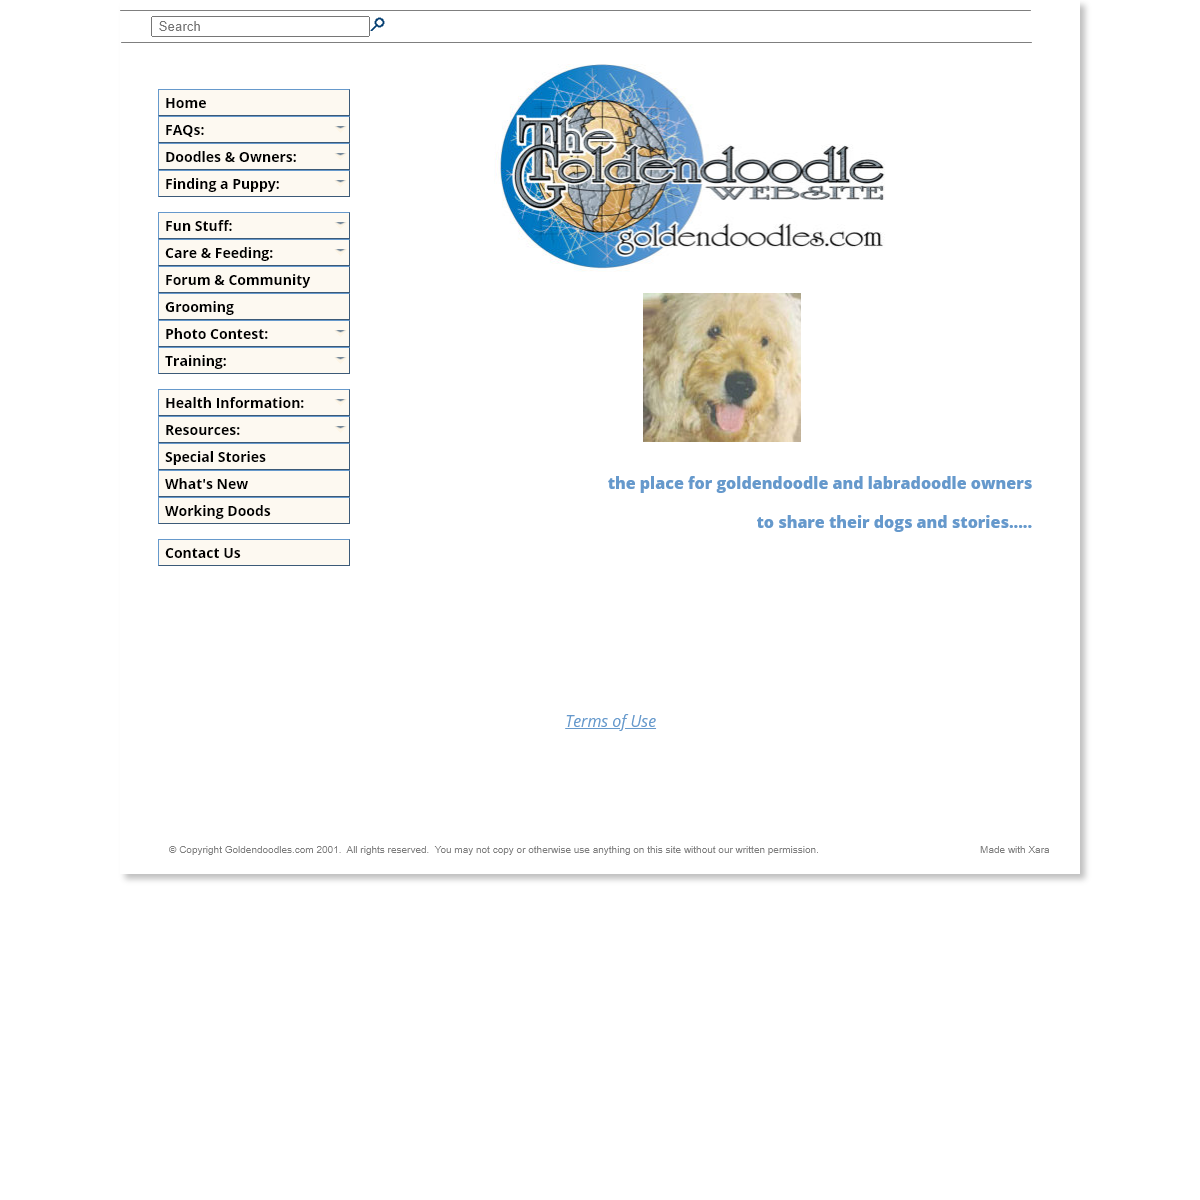 A complete backup of goldendoodles.com